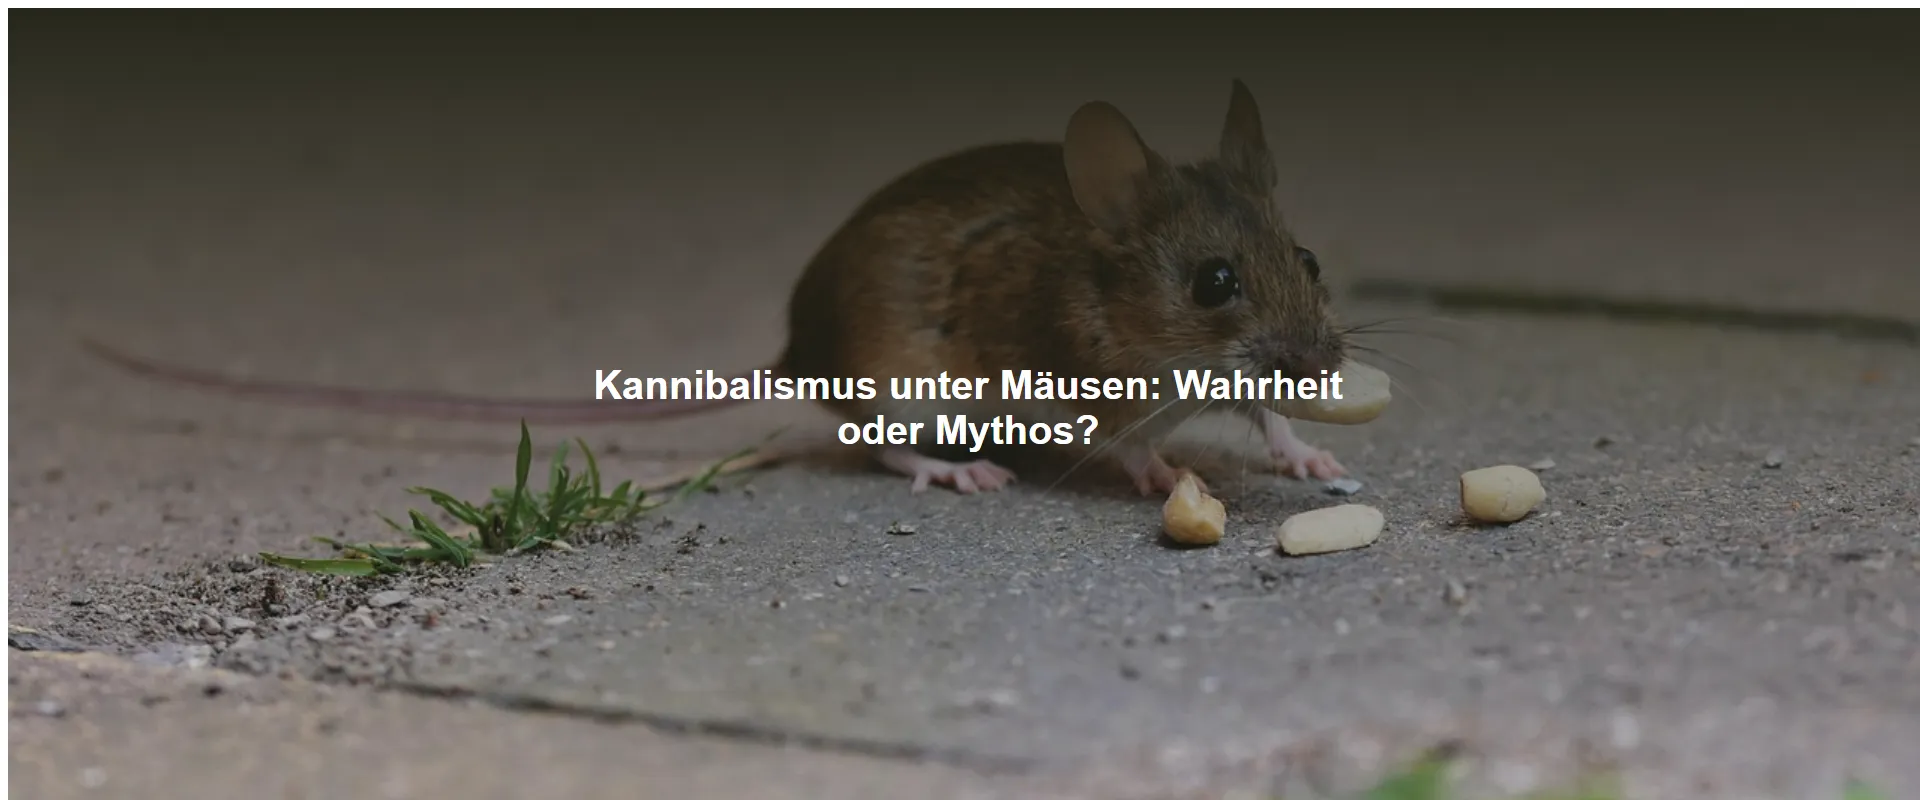 Kannibalismus unter Mäusen: Wahrheit oder Mythos?